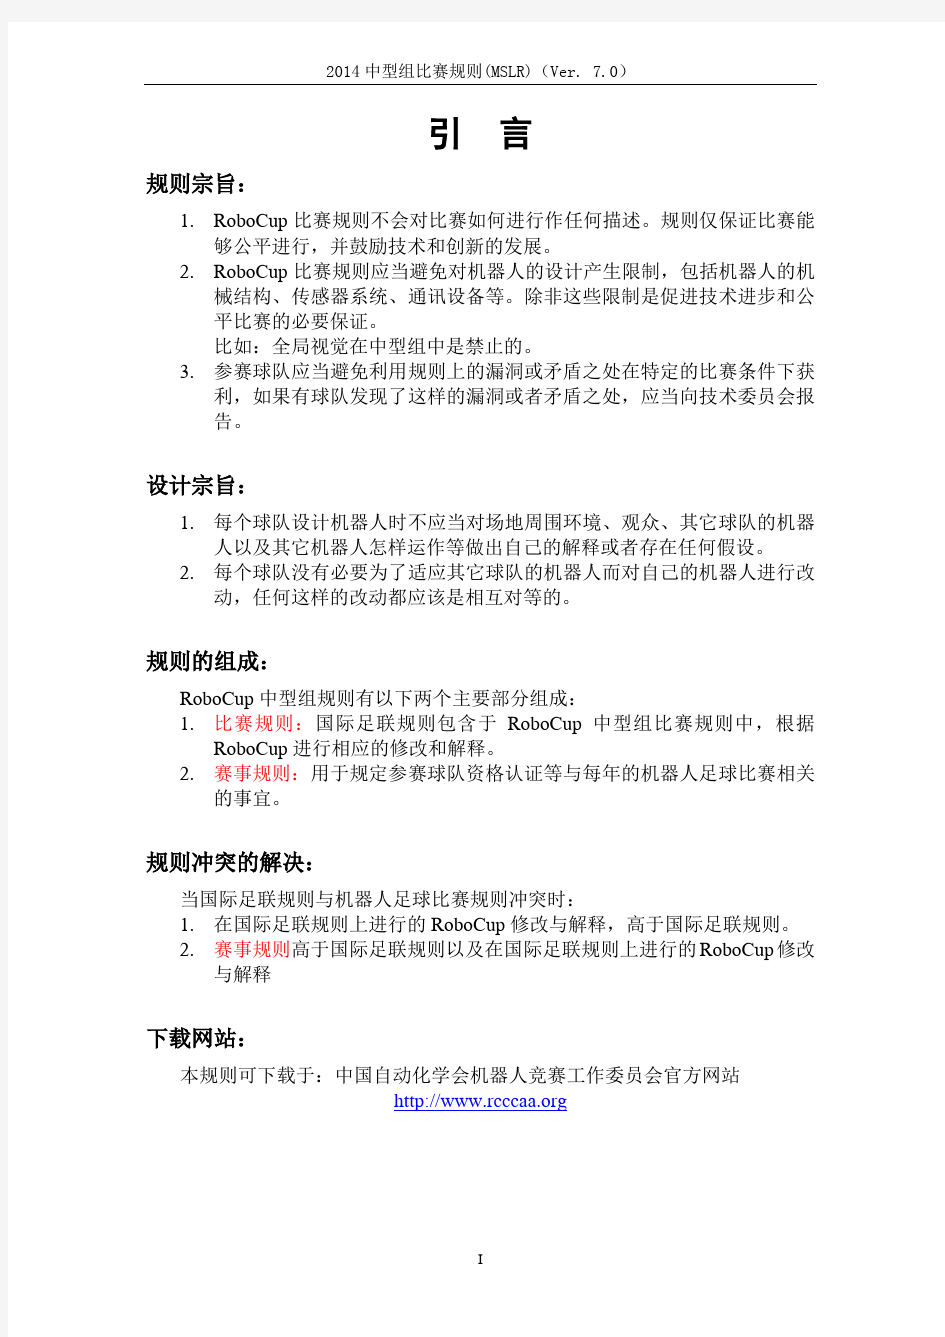 2014中国机器人大赛暨RoboCup中国公开赛中型组规则(7.0版)